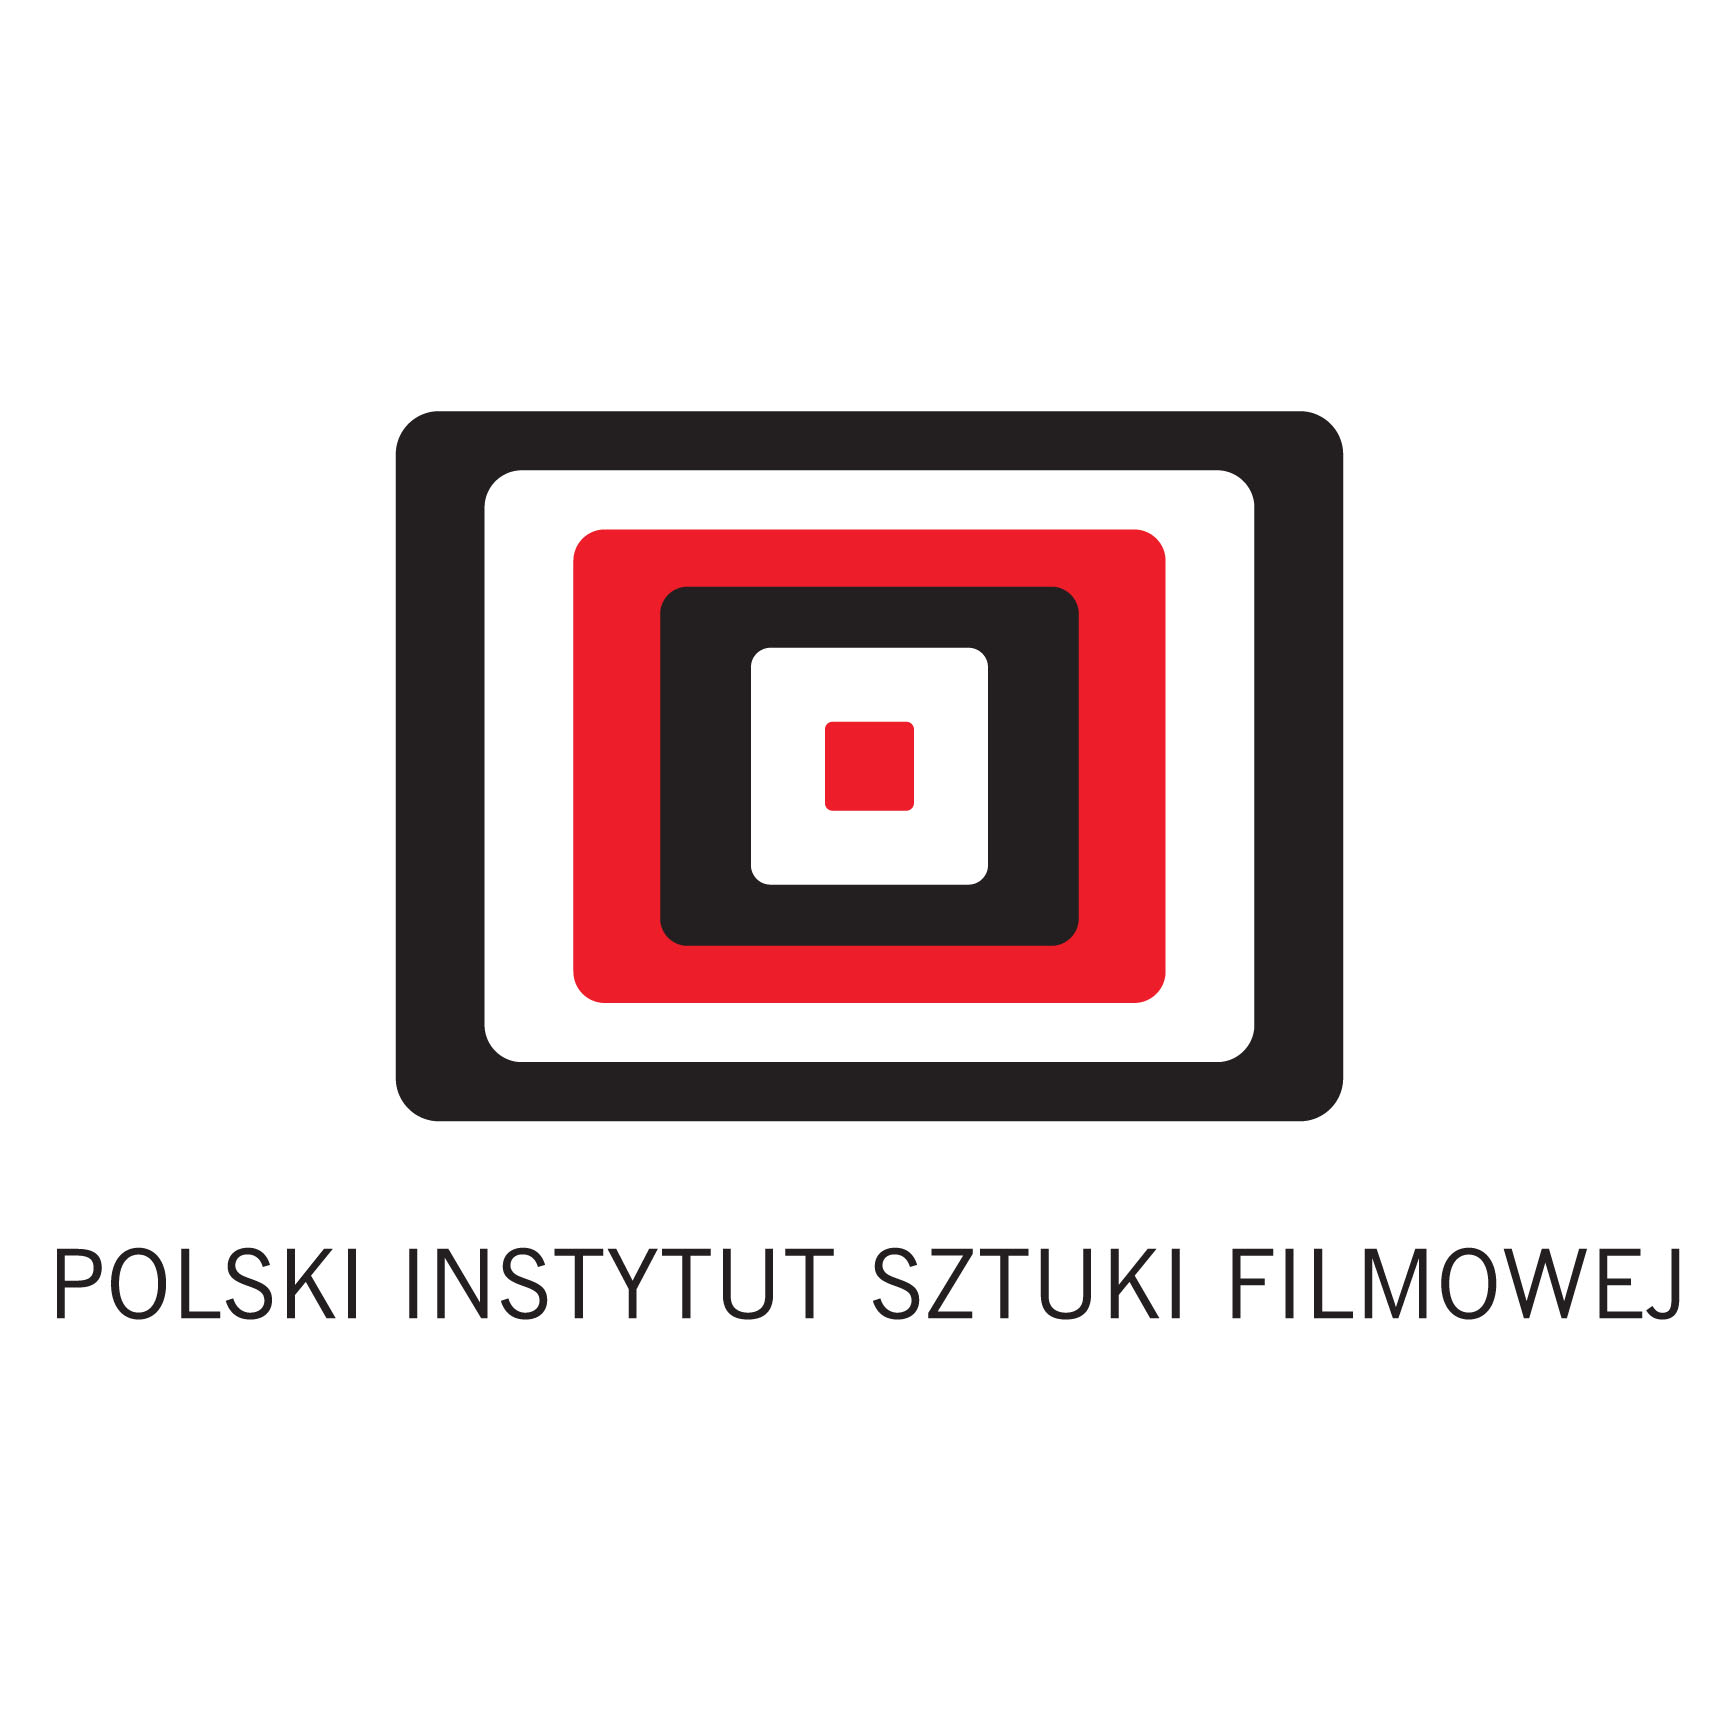 Polish Film Institute's logo.